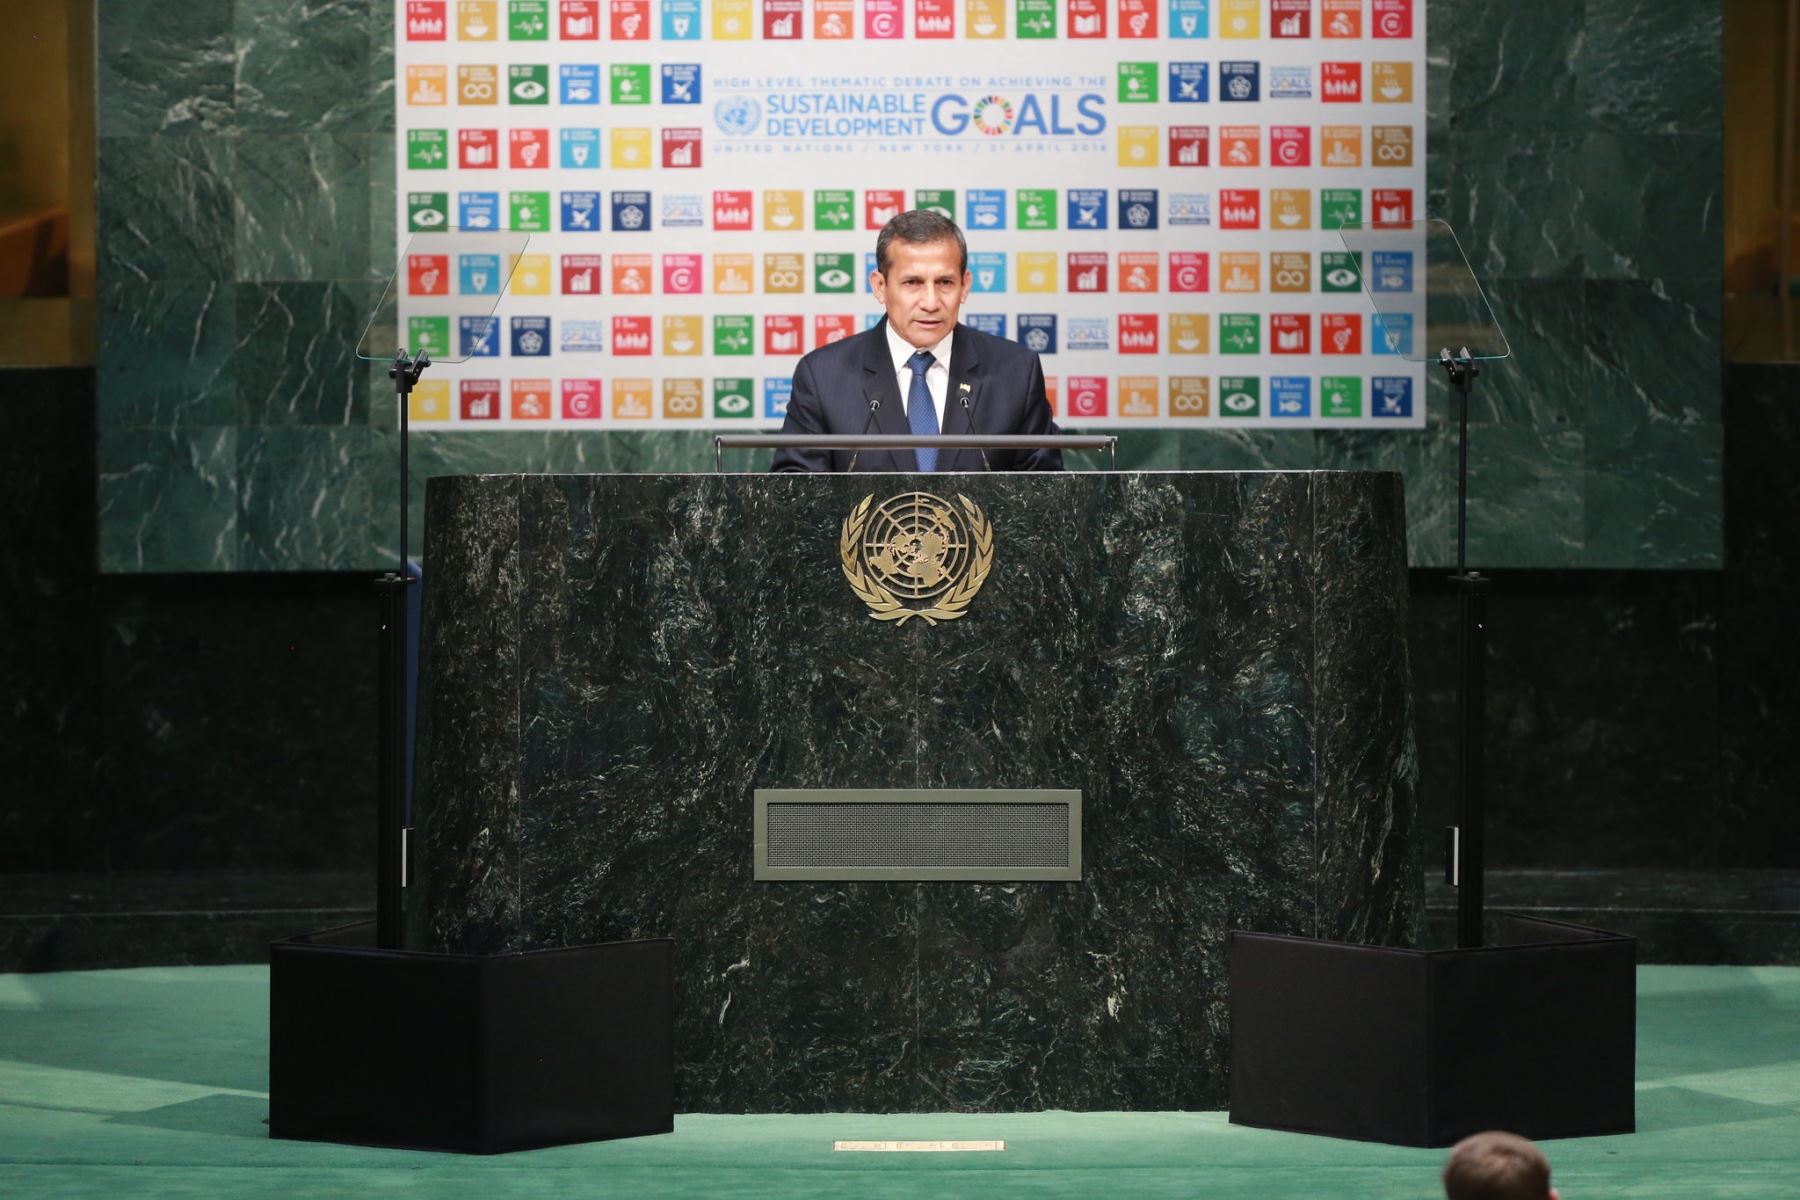 Exposición del presidente Ollanta Humala en el debate temático de alto nivel sobre el logro de los Objetivos de Desarrollo Sostenible (ODS), en Nueva York.